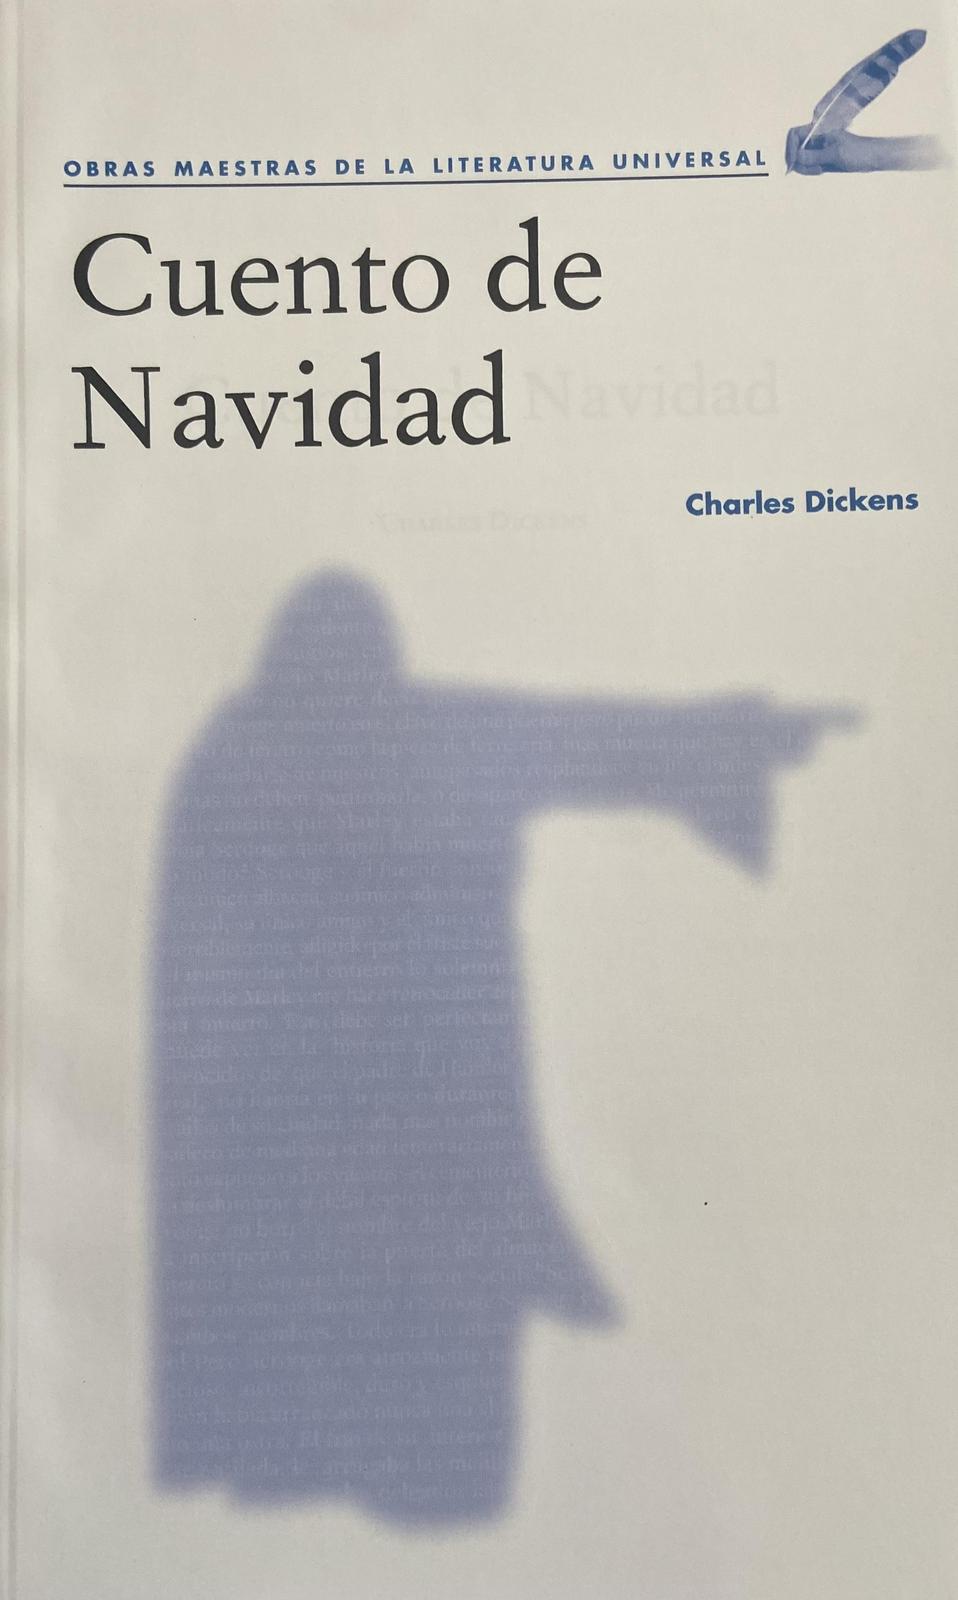 Cuento de Navidad (Spanish language, 2020, Agencia Promotora de Publicaciones, S.A. de C.V.)